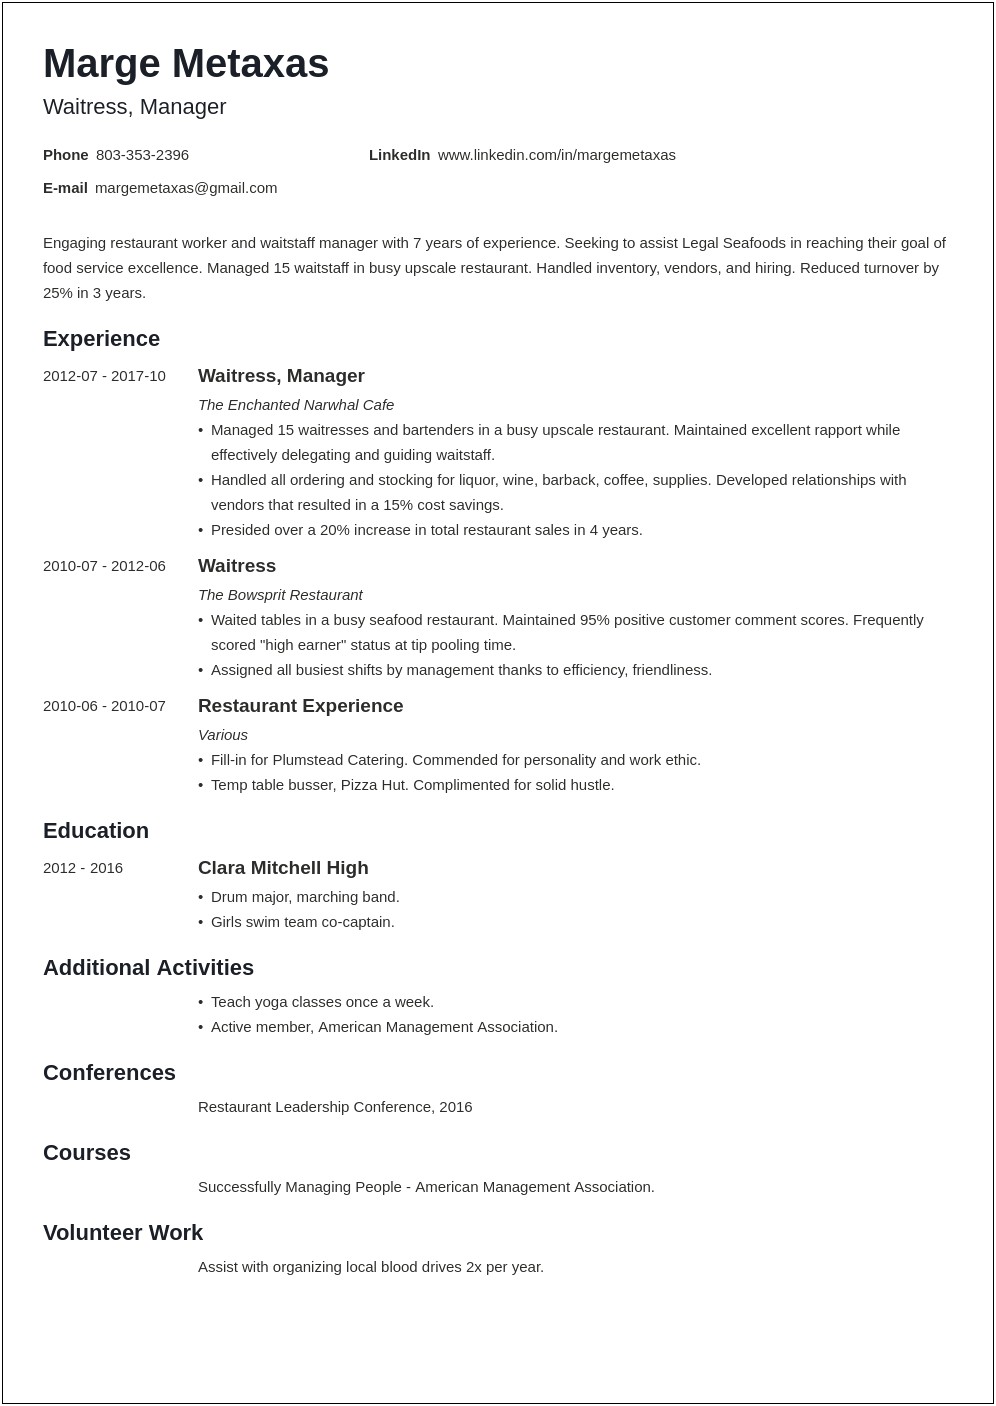 Resume Samples For Restaurant Jobs Resume